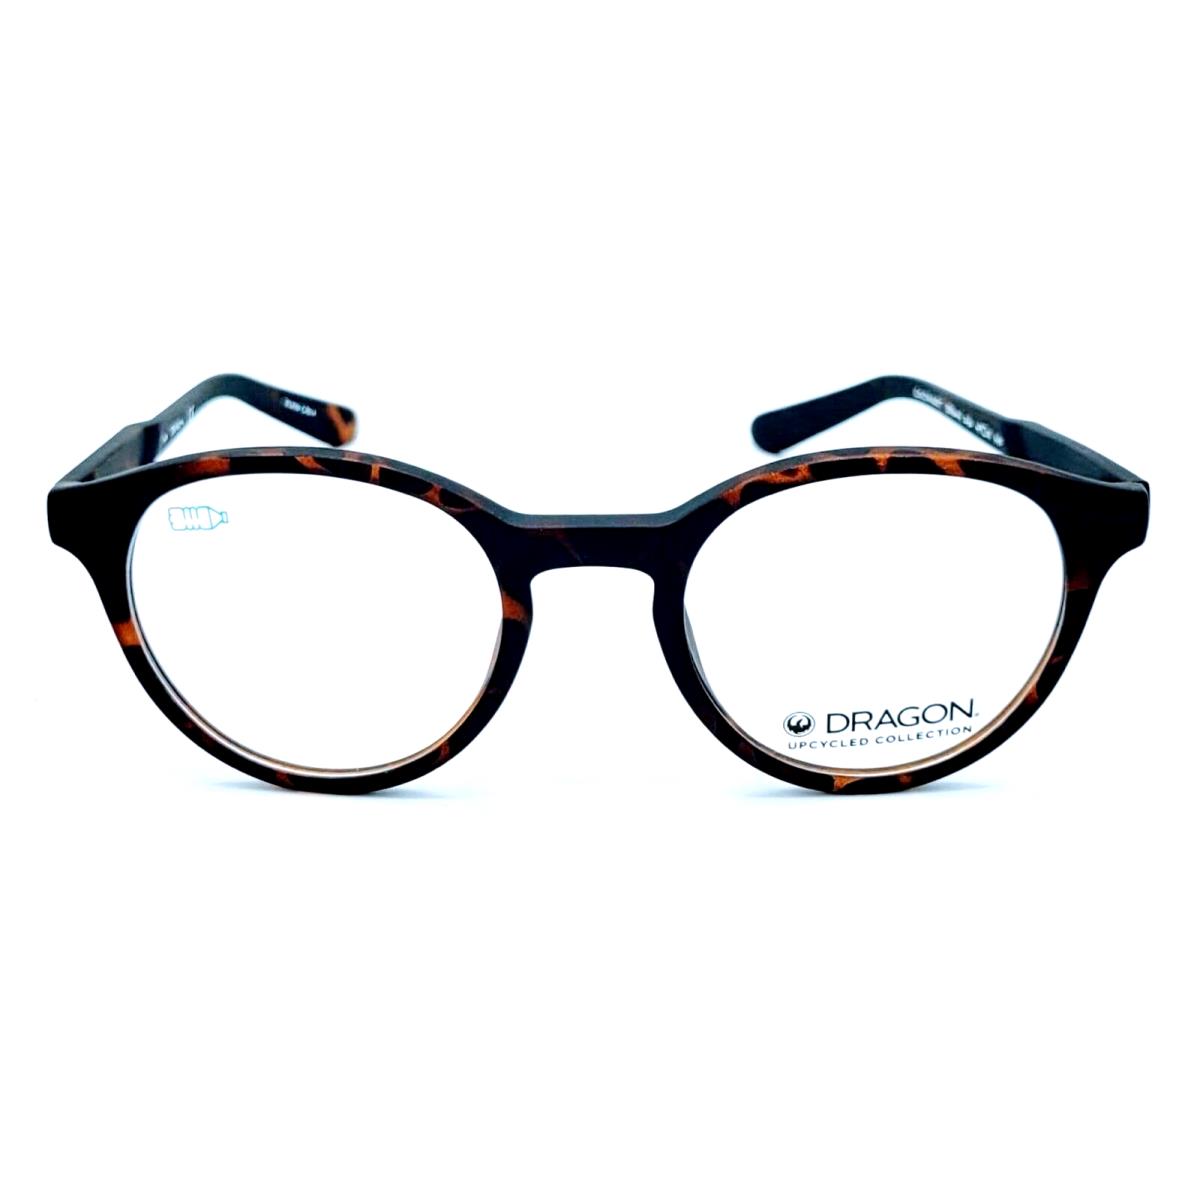 Dragon - DR9004 - 246 49/21/145 - Matte Tortoise - Eyeglasses